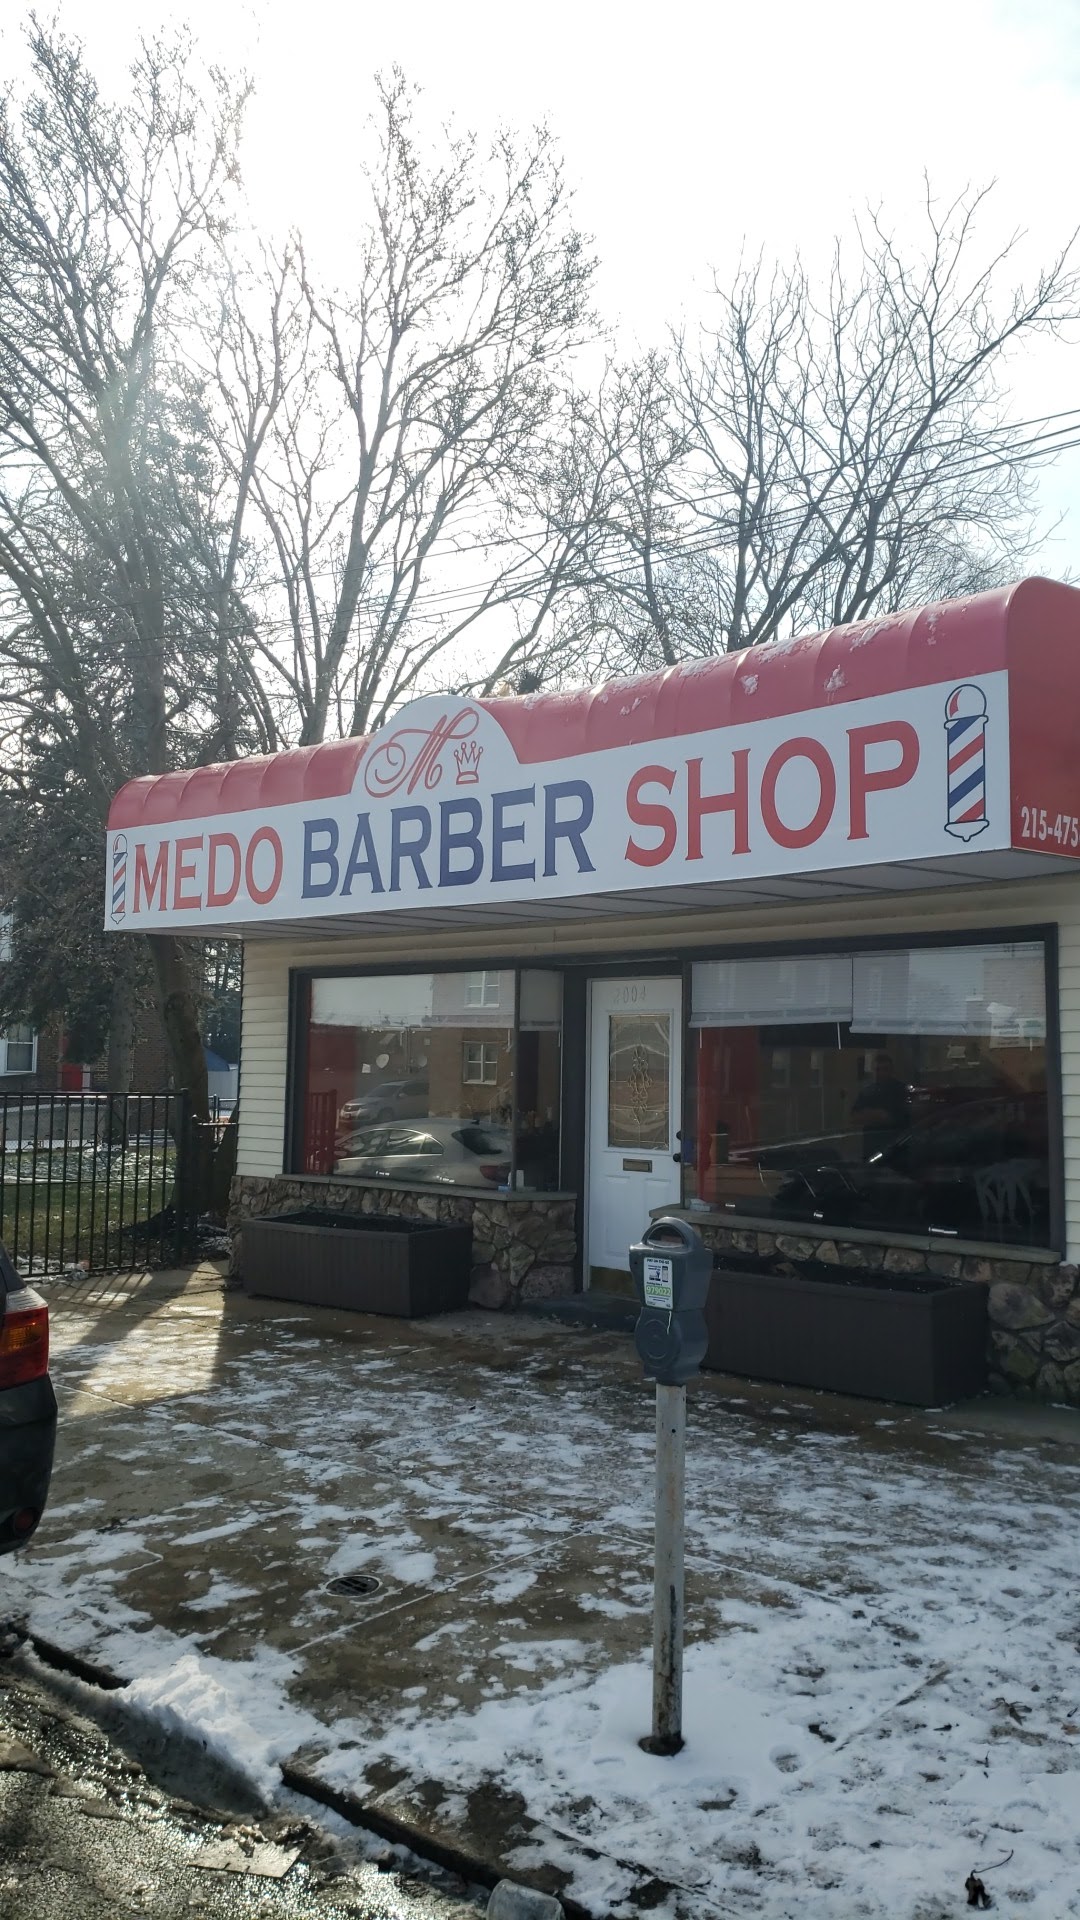 Medo Barbershop